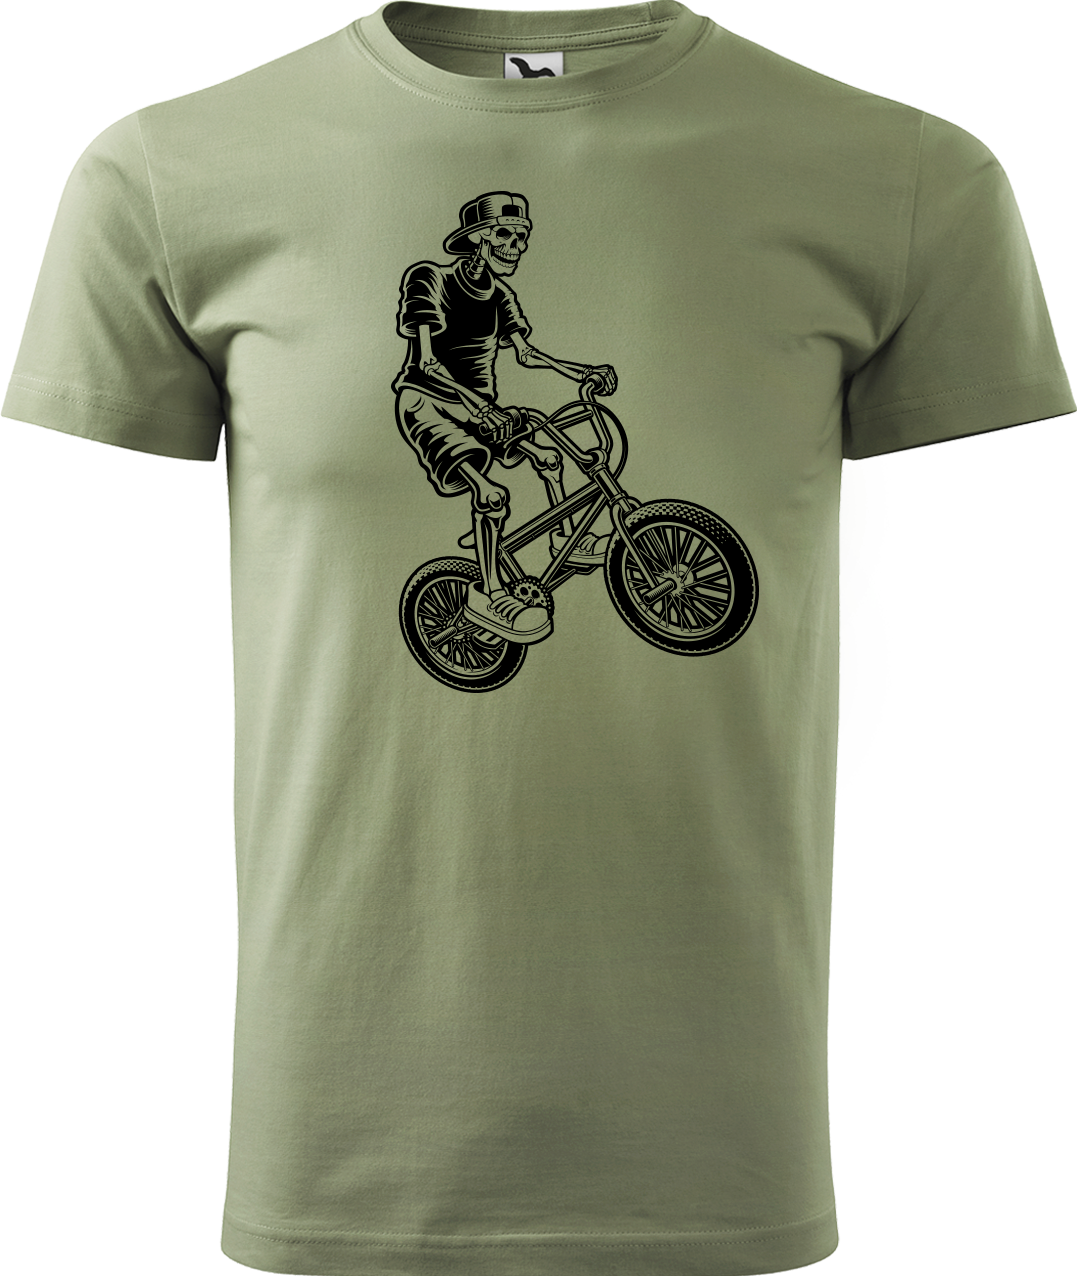 Pánské tričko s kolem - Trial Bike Velikost: M, Barva: Světlá khaki (28)